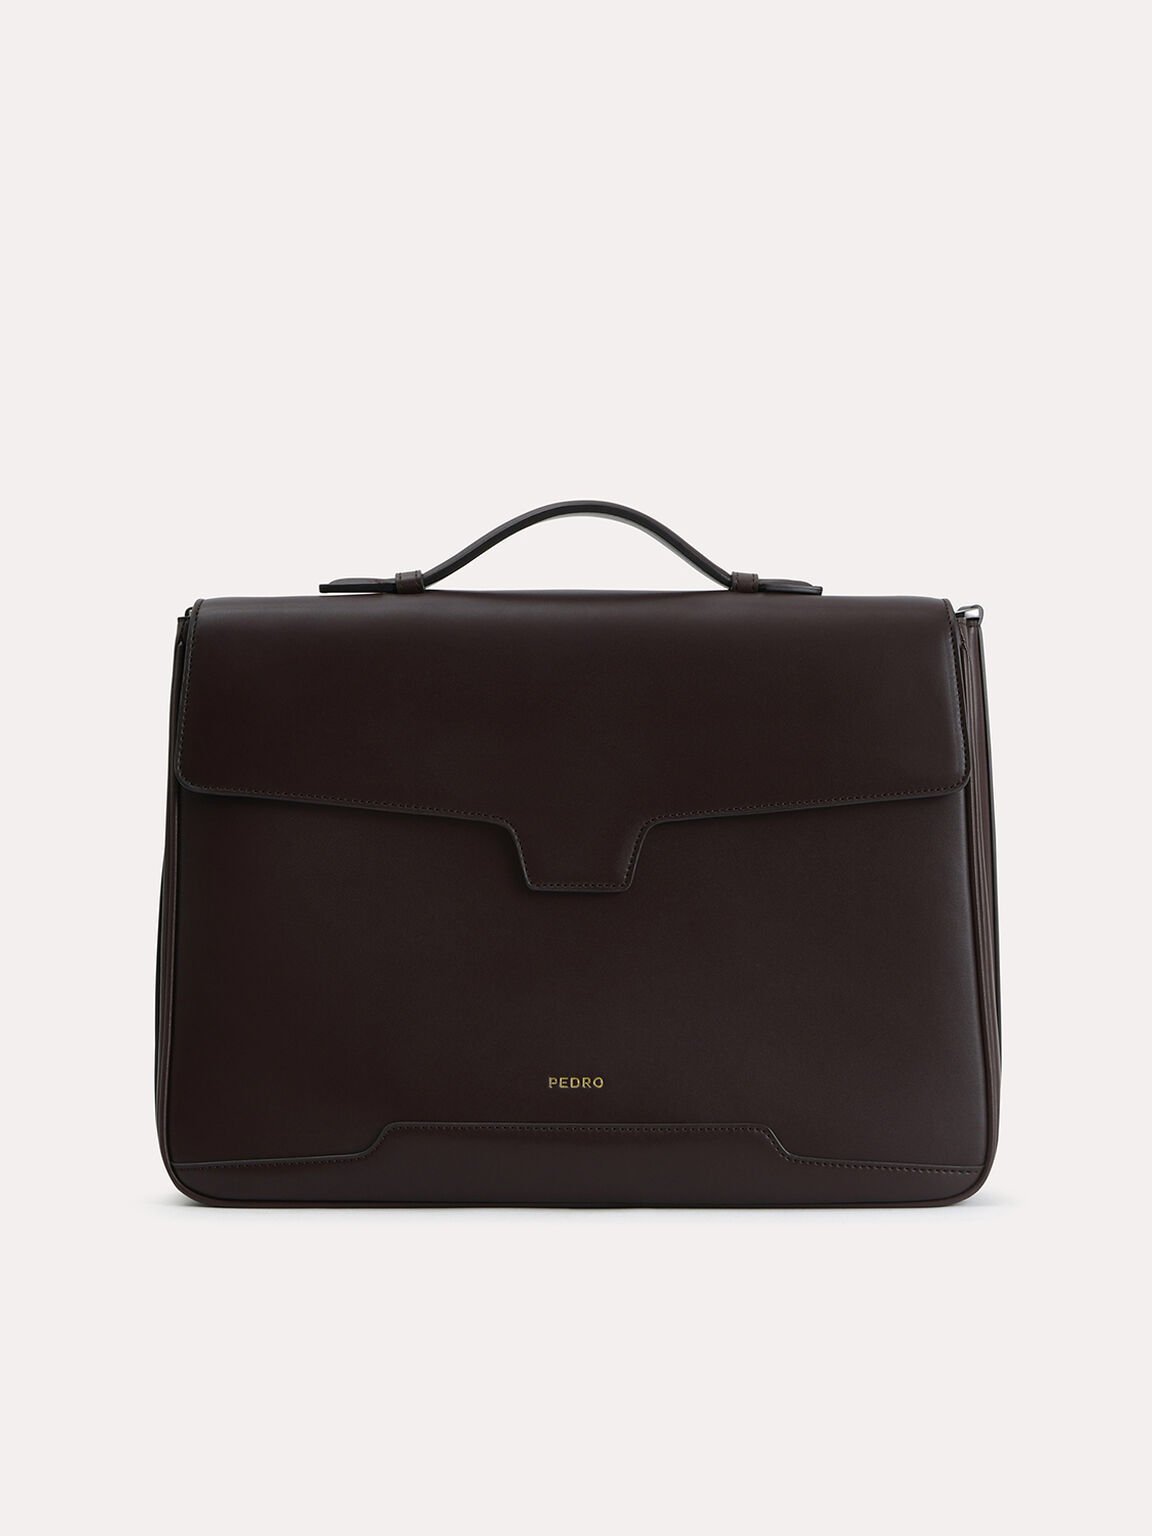 Leather Briefcase, Dark Brown